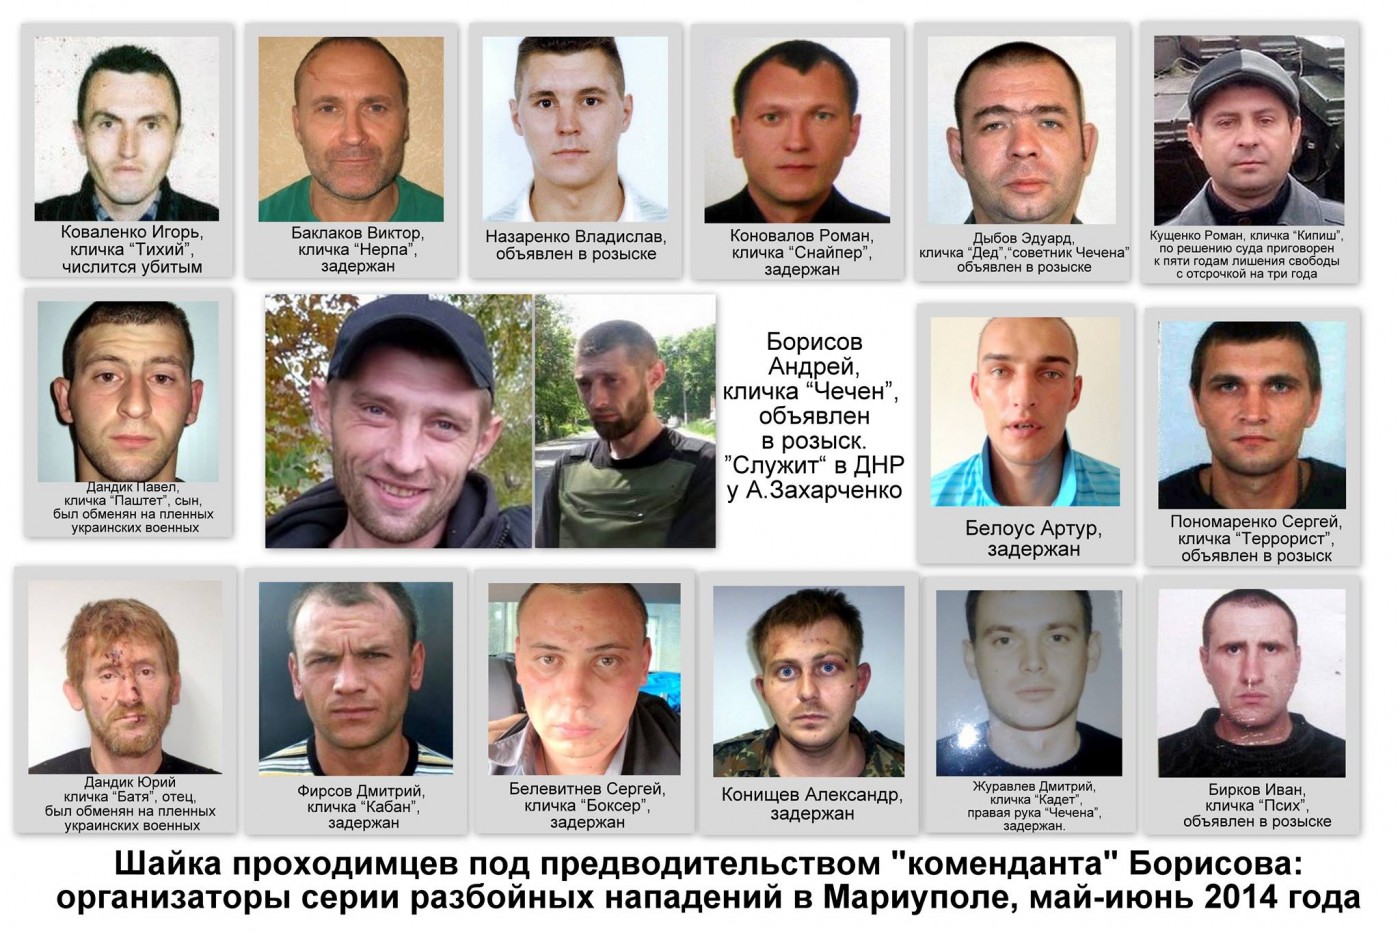  МВД обнародовало имена и фотографии 20 боевиков захватившие Мариуполь в 2014 году